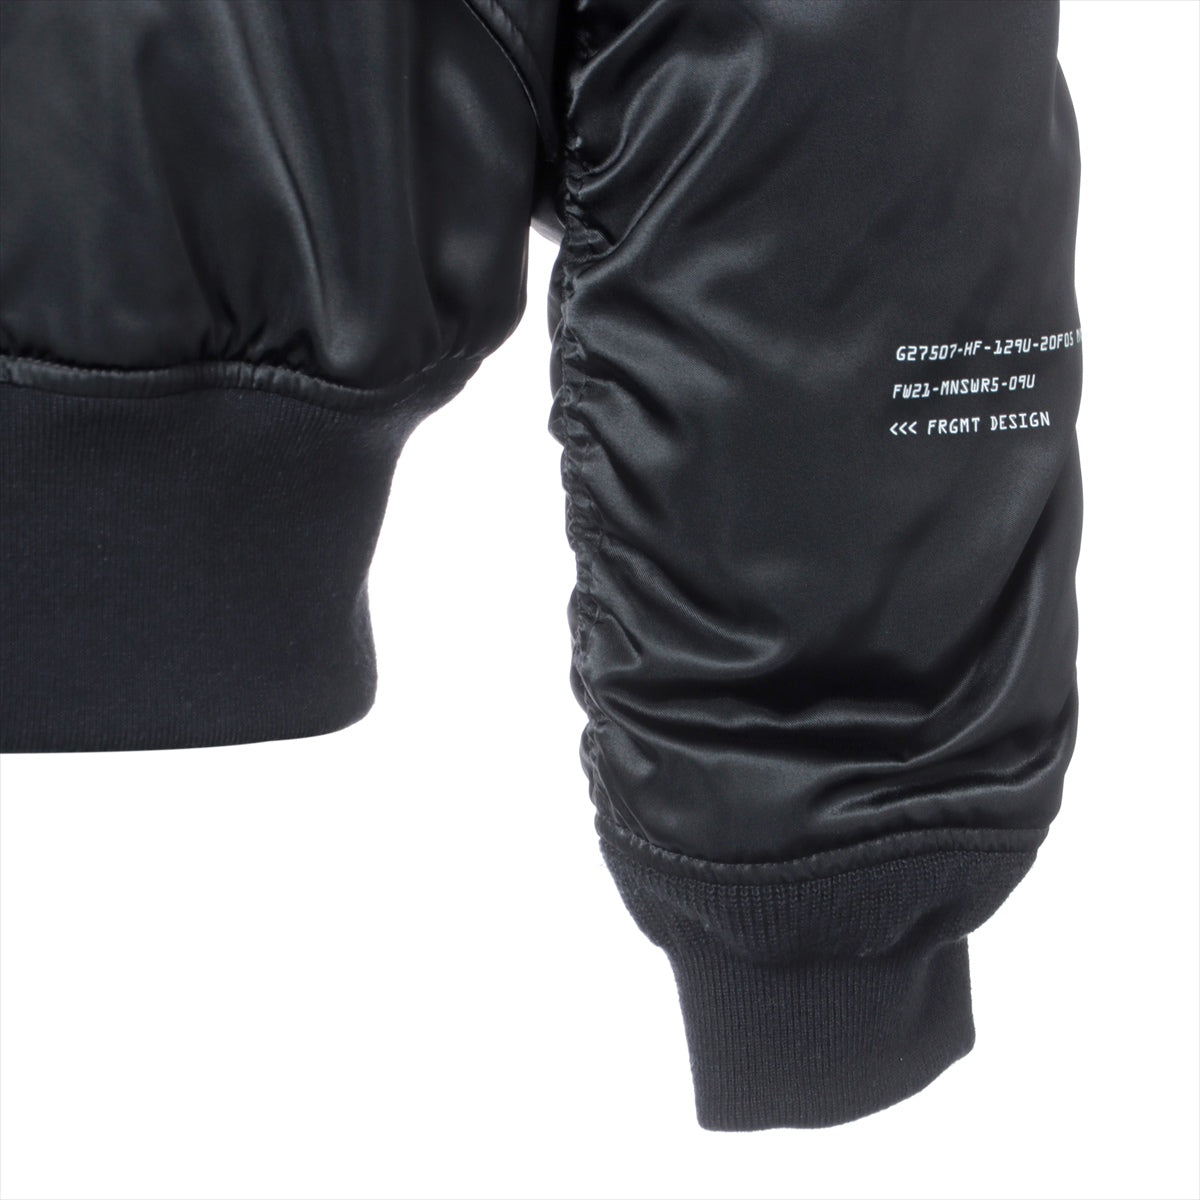 Moncler Genius Fragment RASSOS 21 years Nylon Down jacket 2 Men's Black  MA-1 Hiroshi Fujiwara